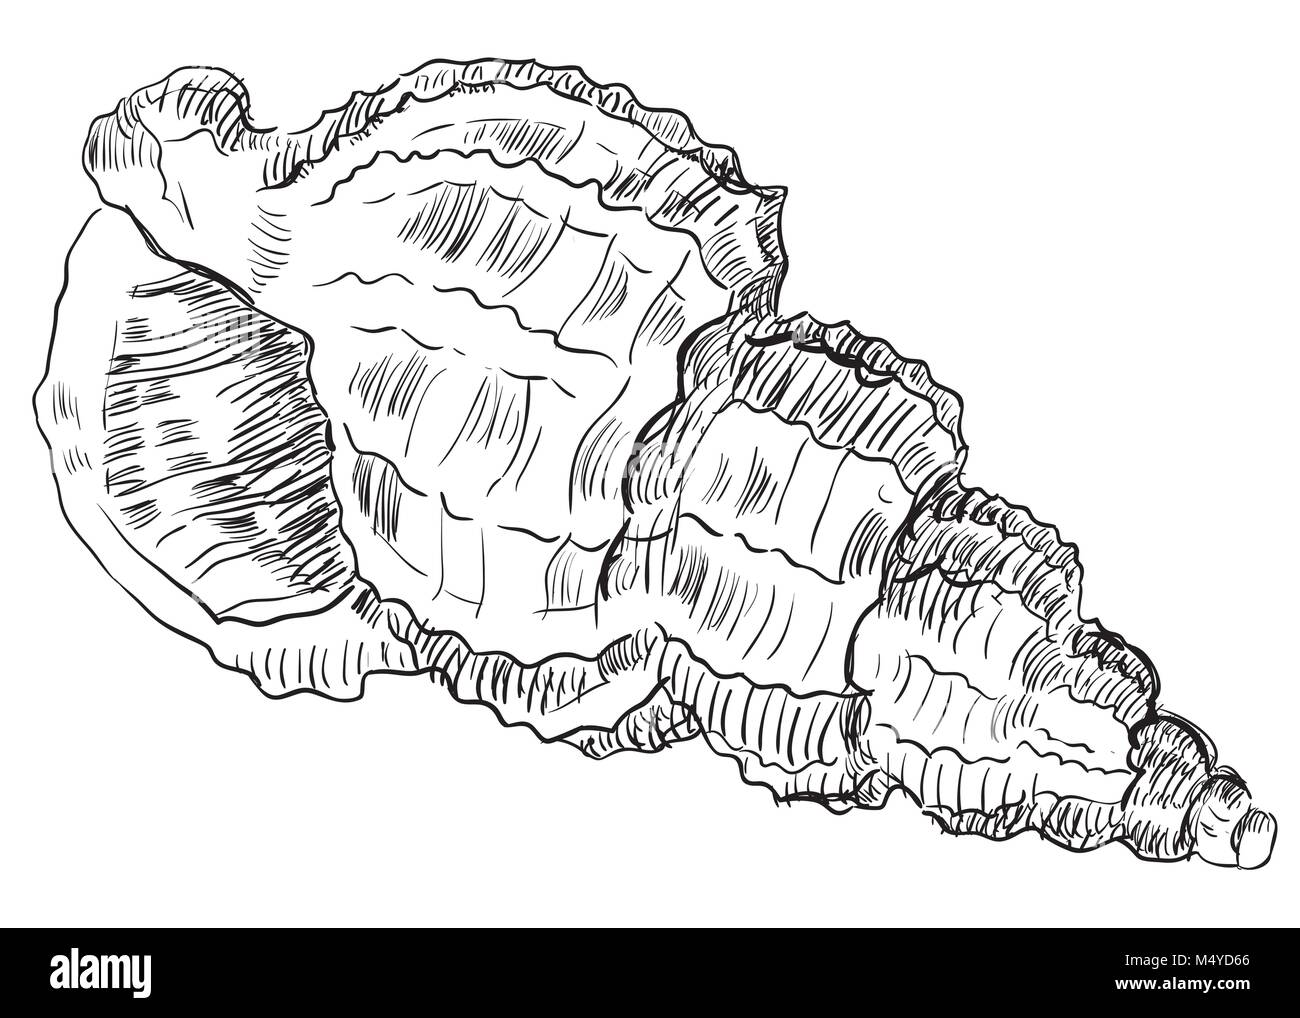 Handzeichnung seashell. Vektor monochrome Darstellung der Muschel (Muschel) isoliert auf weißem Hintergrund. Stock Vektor